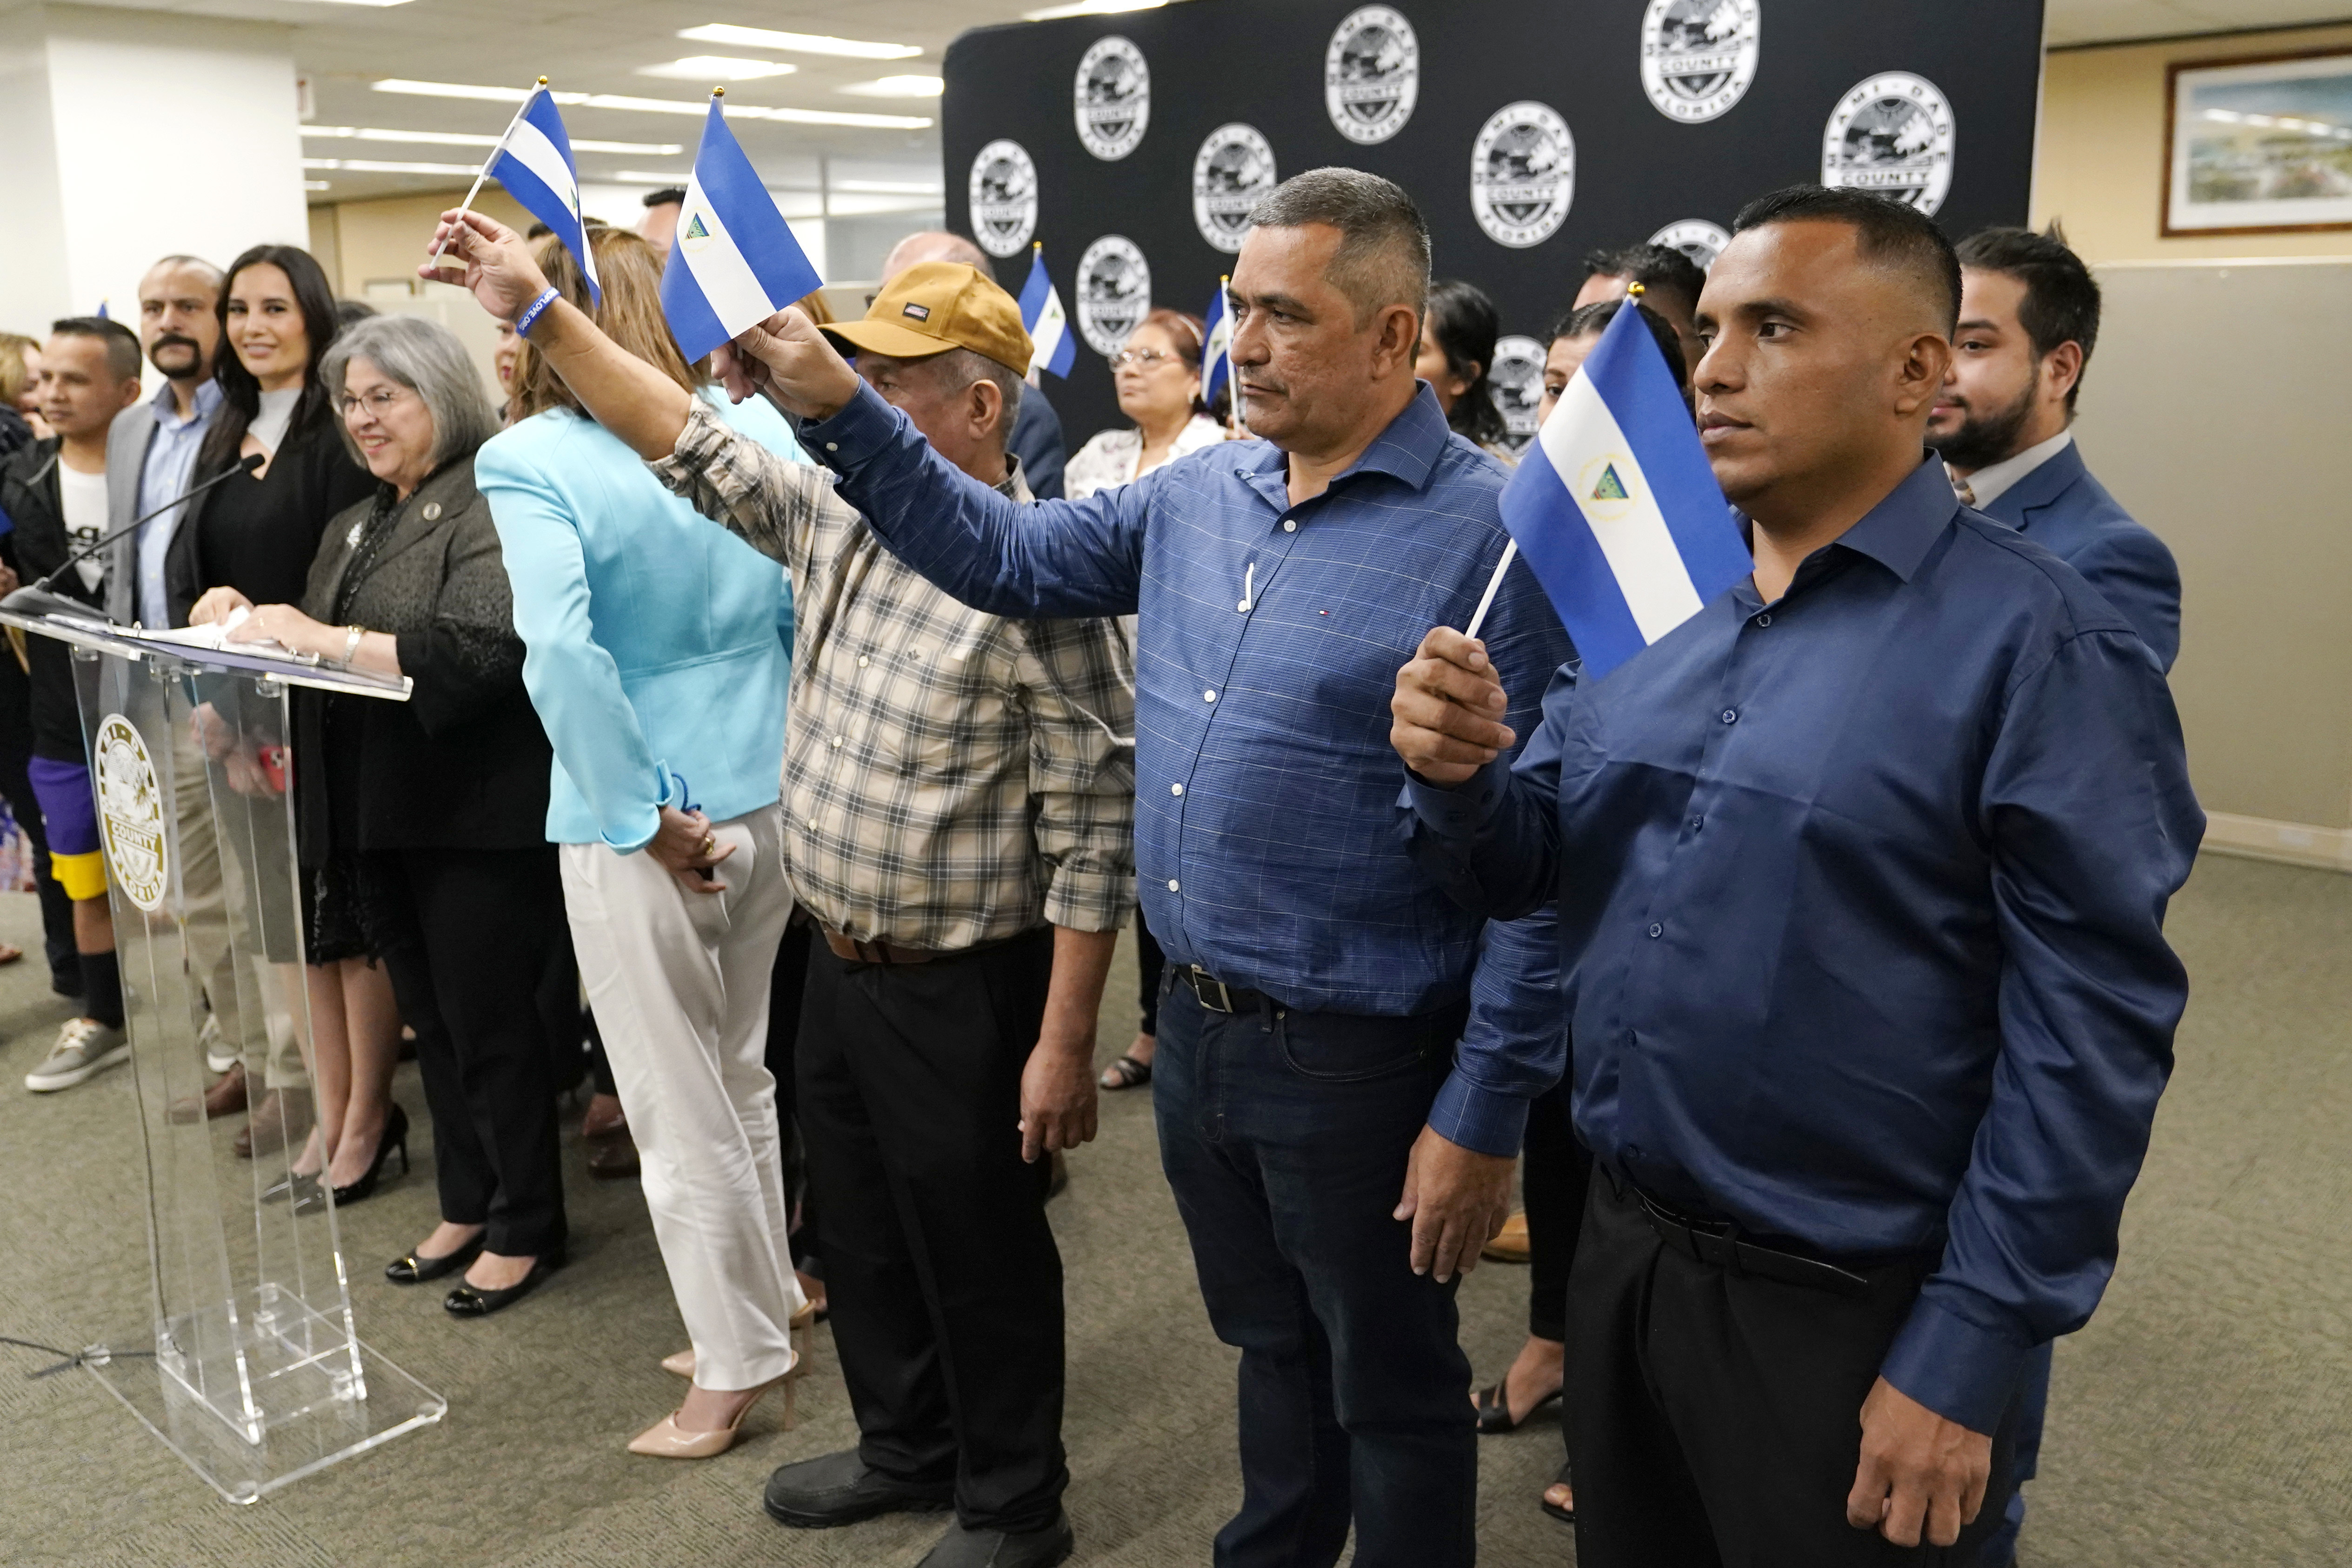 Isaías Martinez Rivas, el primer hombre vestido de azul desde la derecha, permanece parado junto a otros opositores políticos de Nicaragua expulsados de su país durante una rueda de prensa en la oficina de la alcaldesa del condado de Miami-Dade (AP Foto/Lynne Sladky)